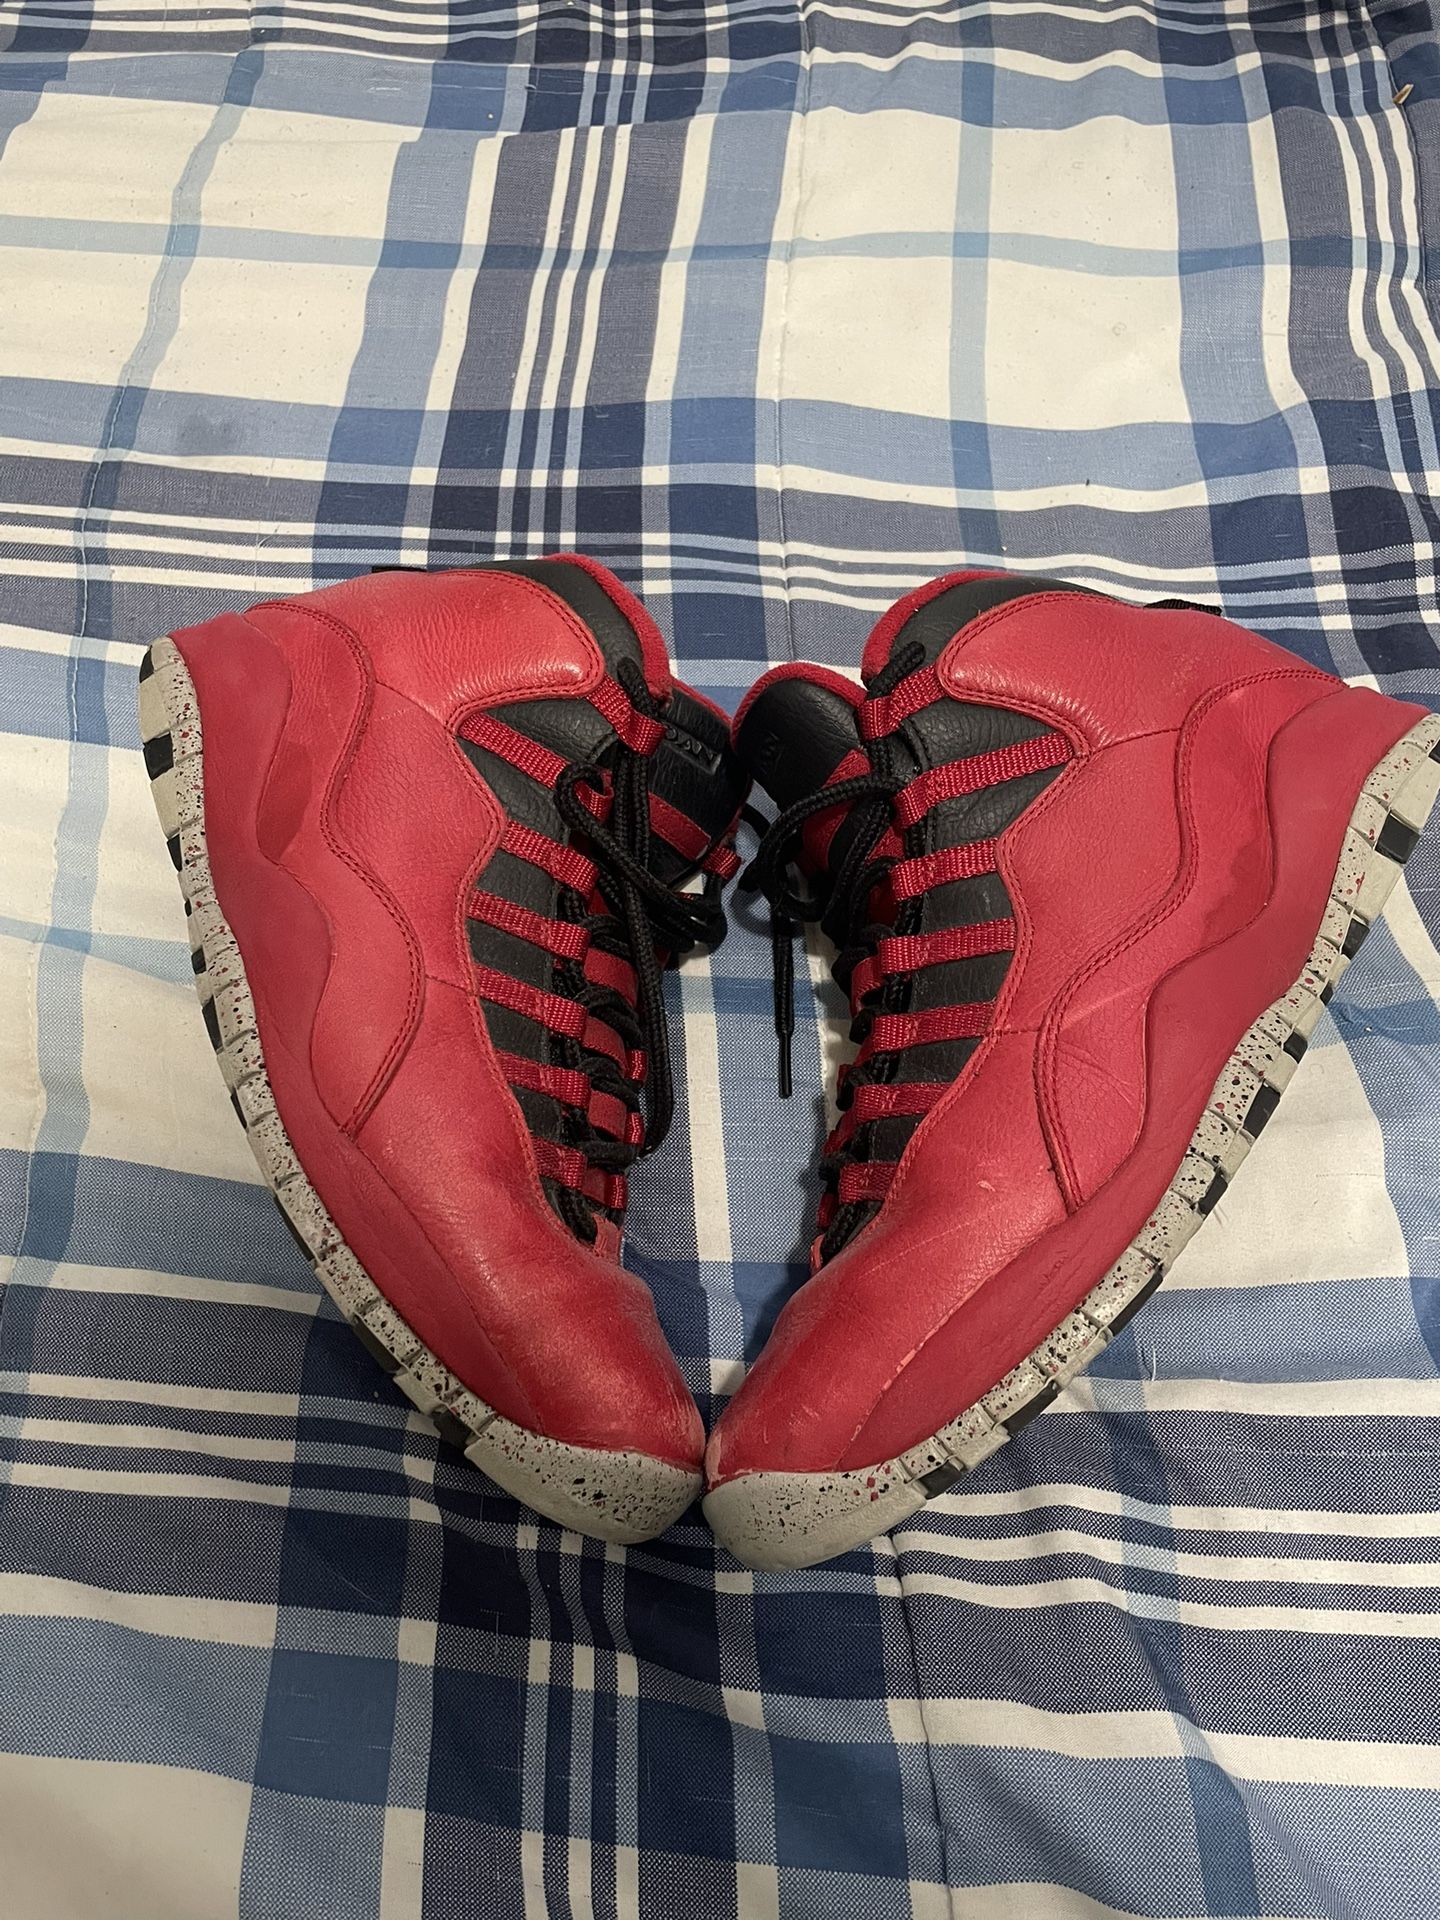 Jordan 10 Red Size 9.5 